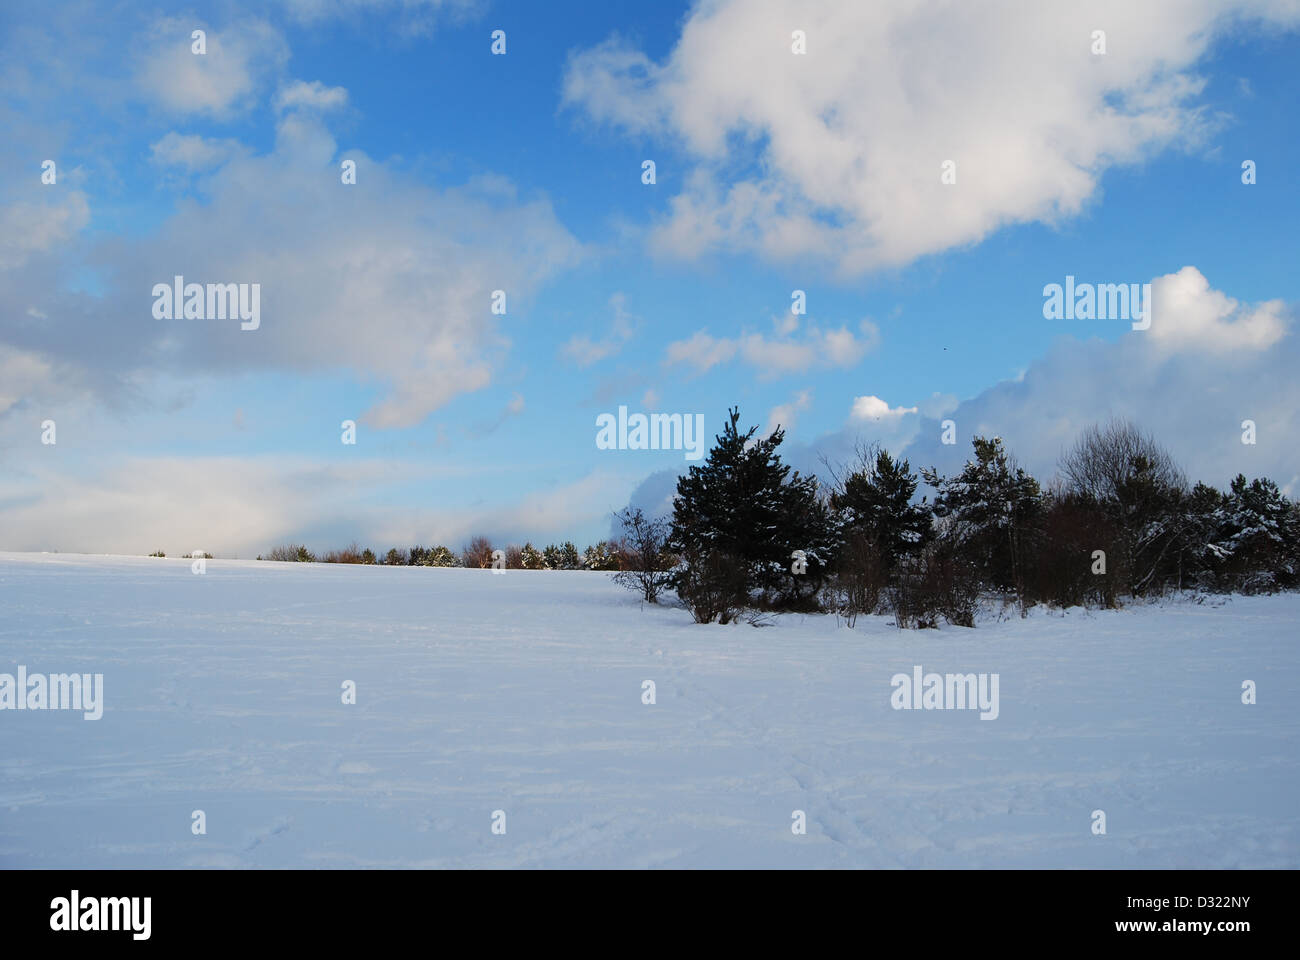 Un notevole gradiente di buio e luminoso cielo blu e nuvole che si affaccia su una vasta copertura di neve su un campo con alberi su orizzonte Foto Stock